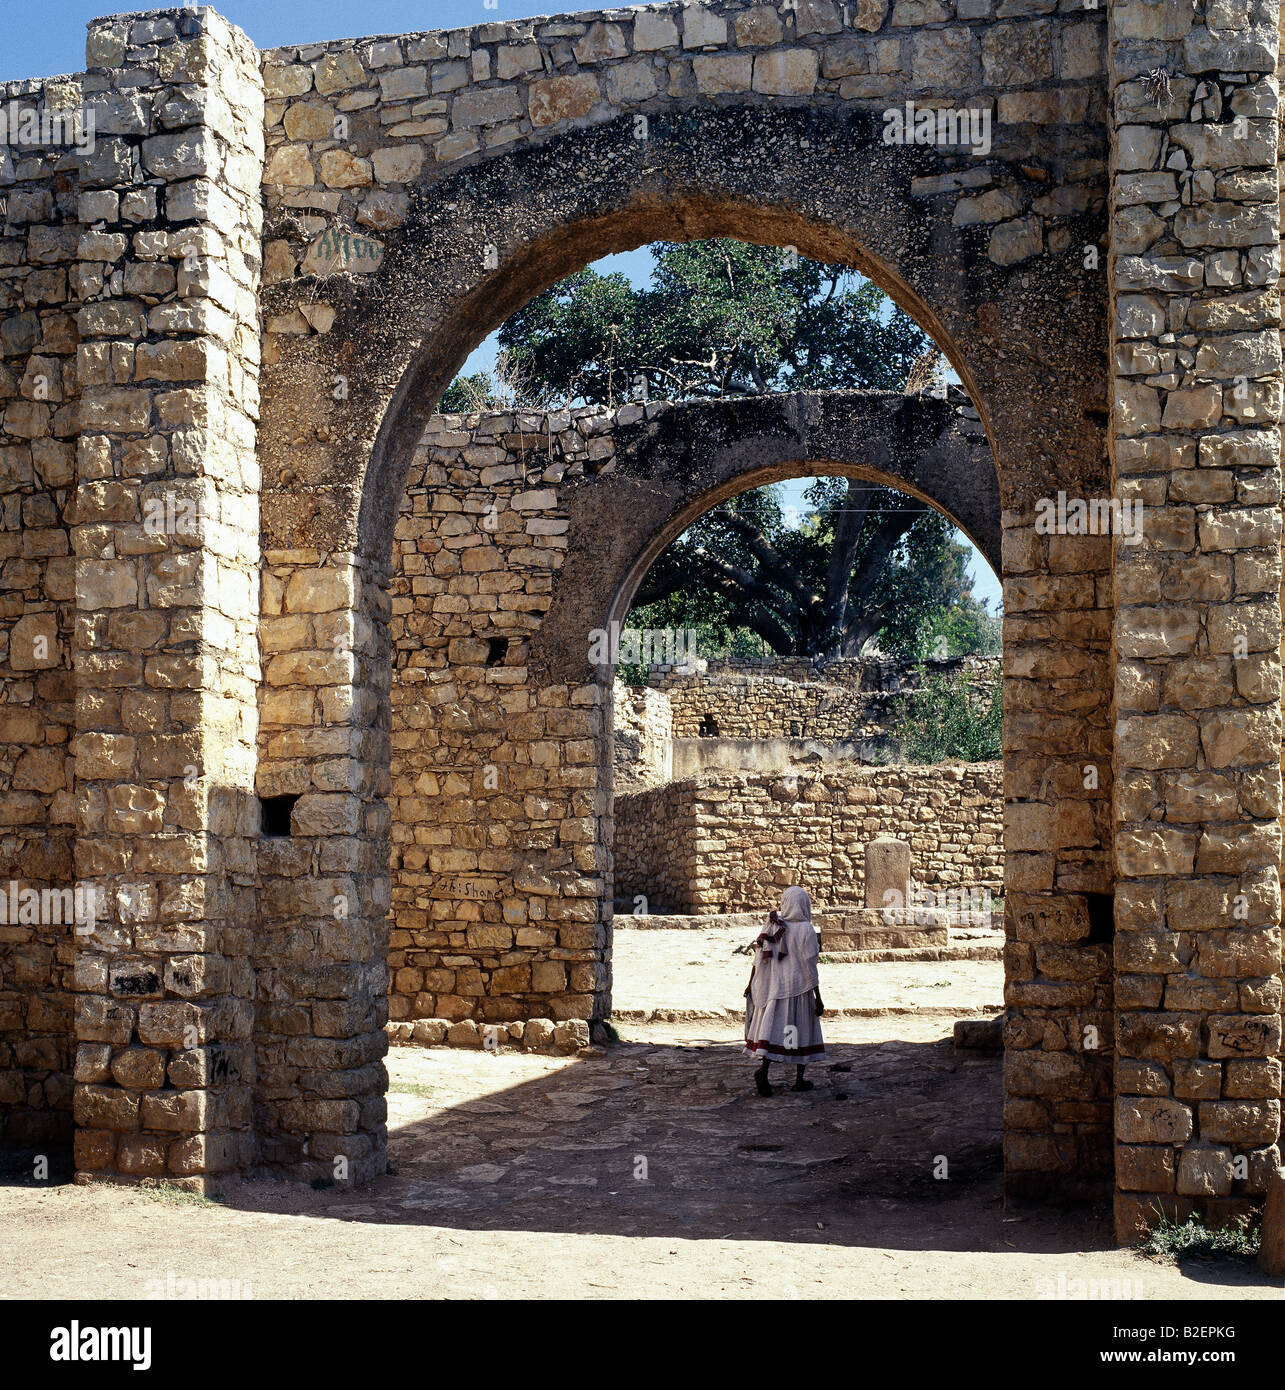 Das steinerne Buda Tor ist eines der sieben Eingänge zu den mittelalterlichen Mauern umgebene Stadt Harar. Stockfoto